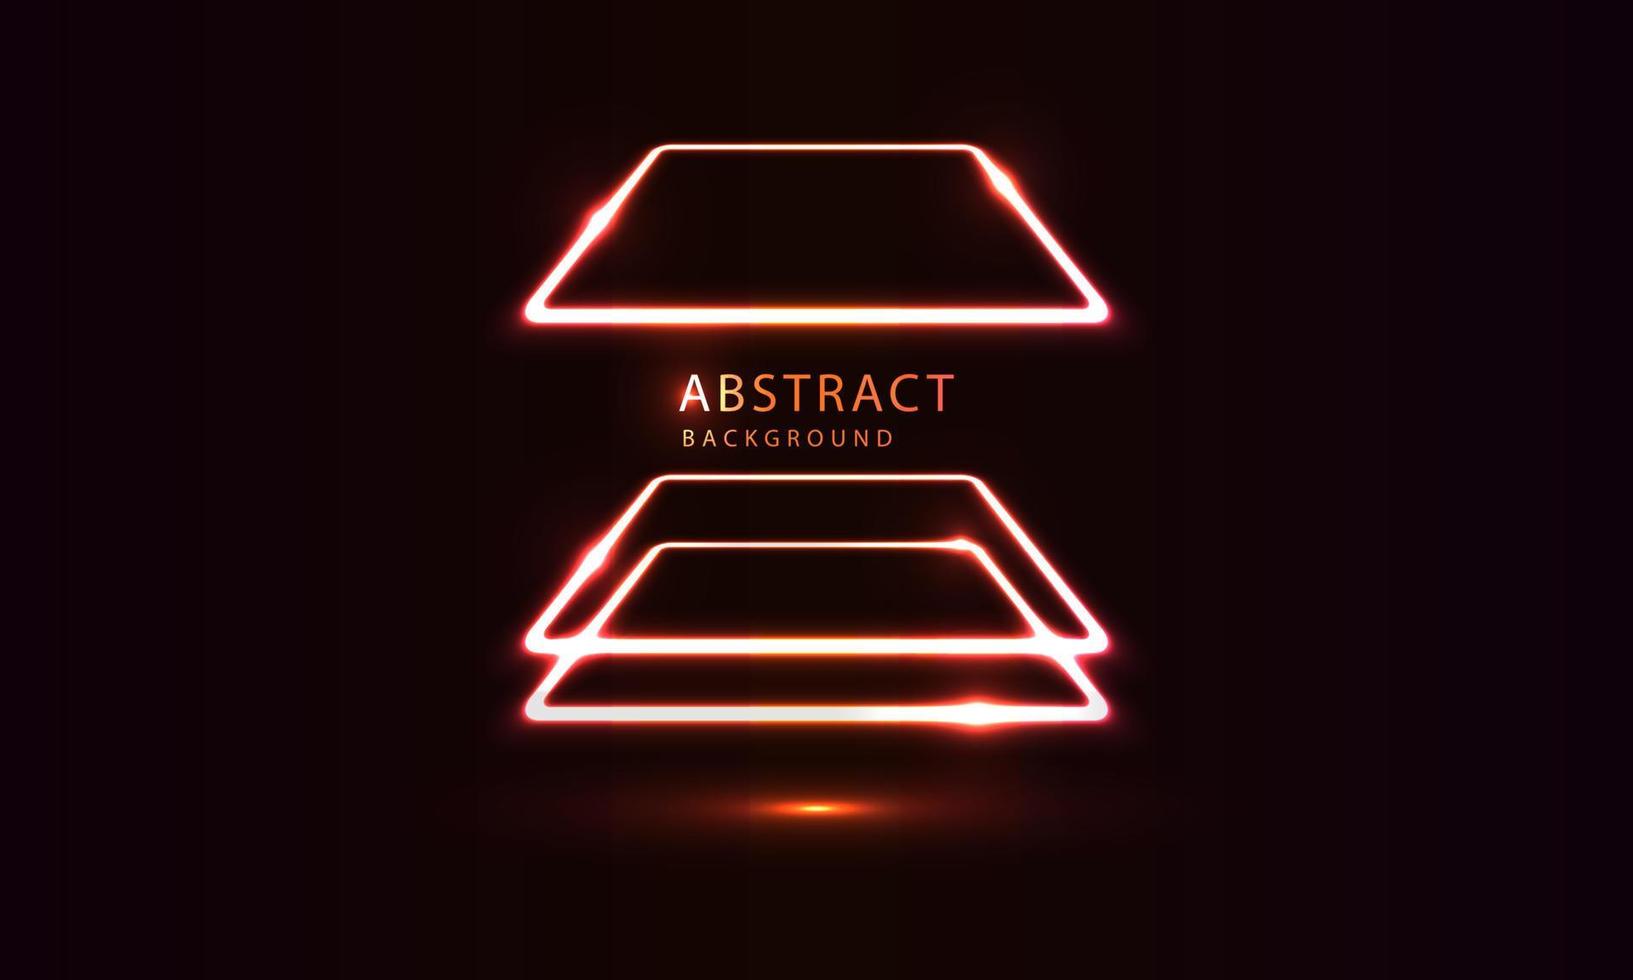 futuristische sci-fi abstracte neonlichtvormen op zwarte achtergrond. exclusief behangontwerp voor poster, brochure, presentatie, website etc. vector